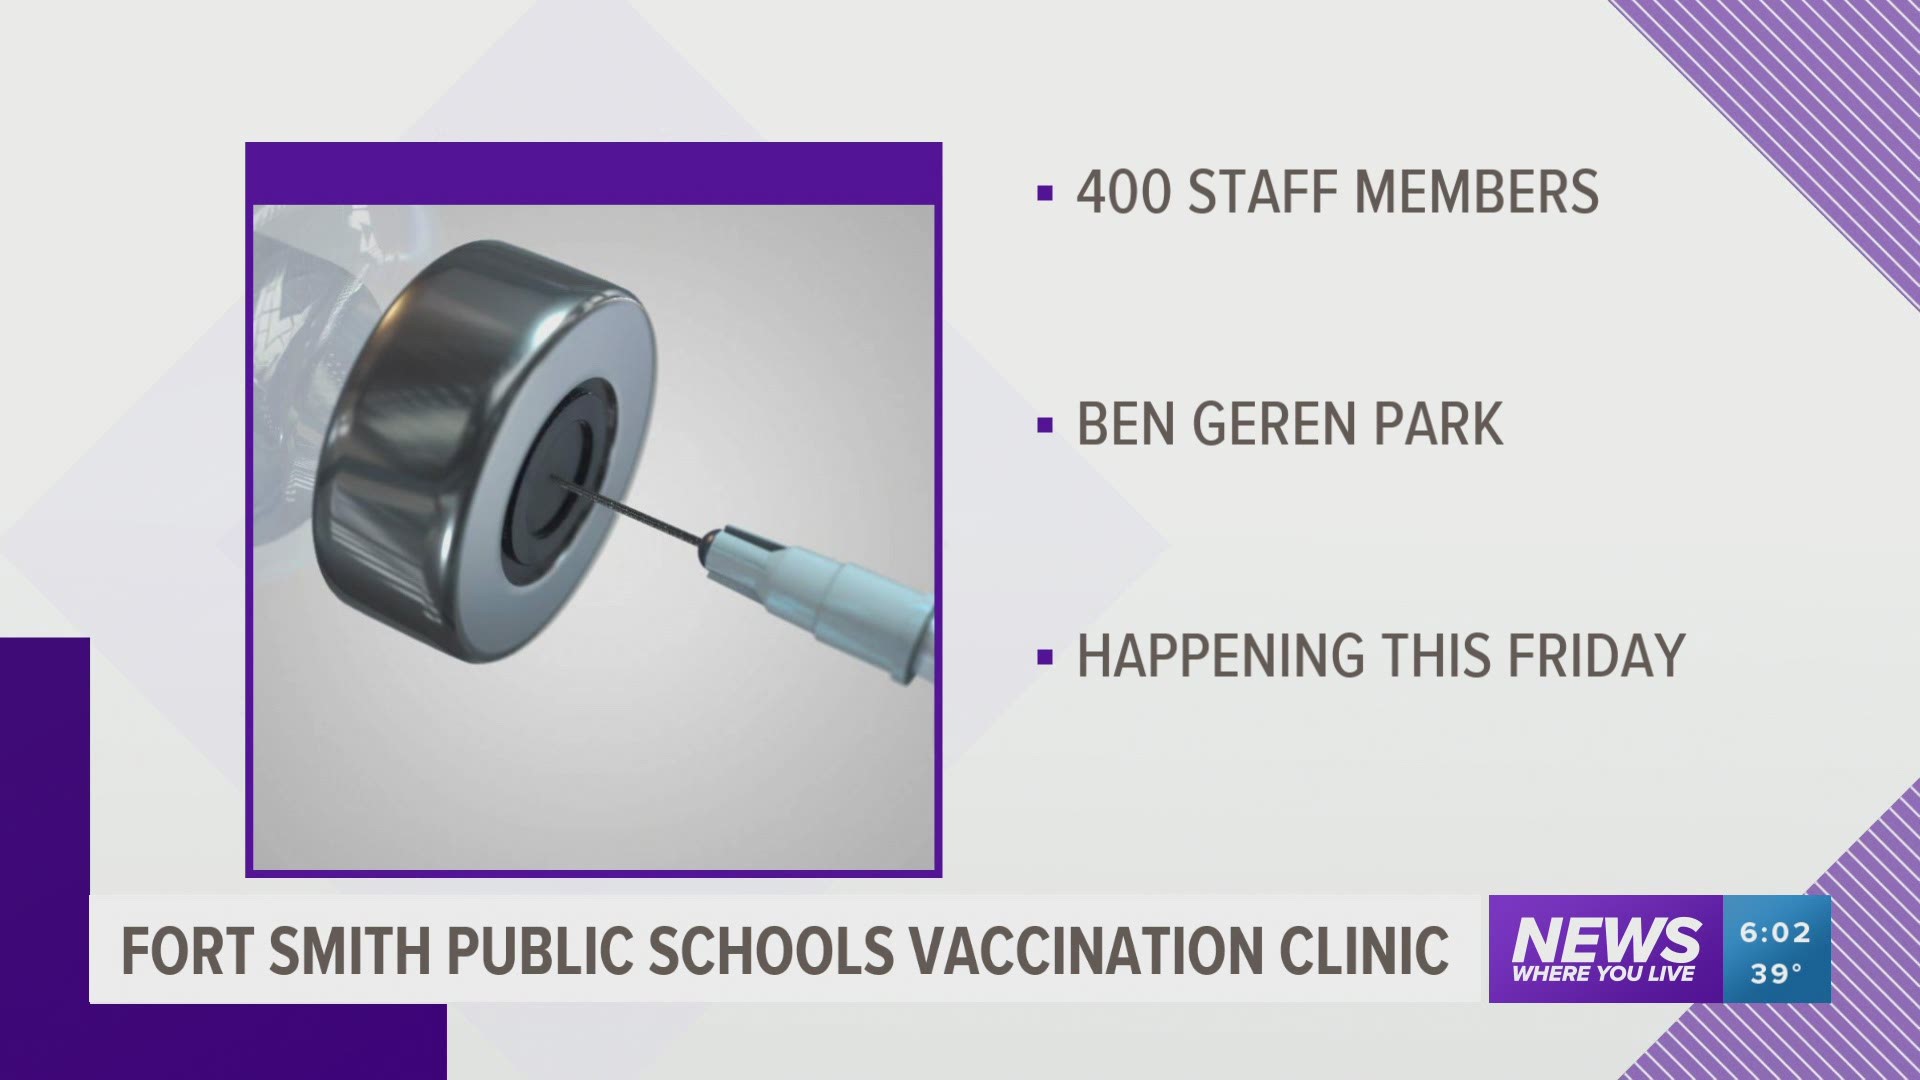 Fort Smith Public Schools Covid-19 vaccination clinic